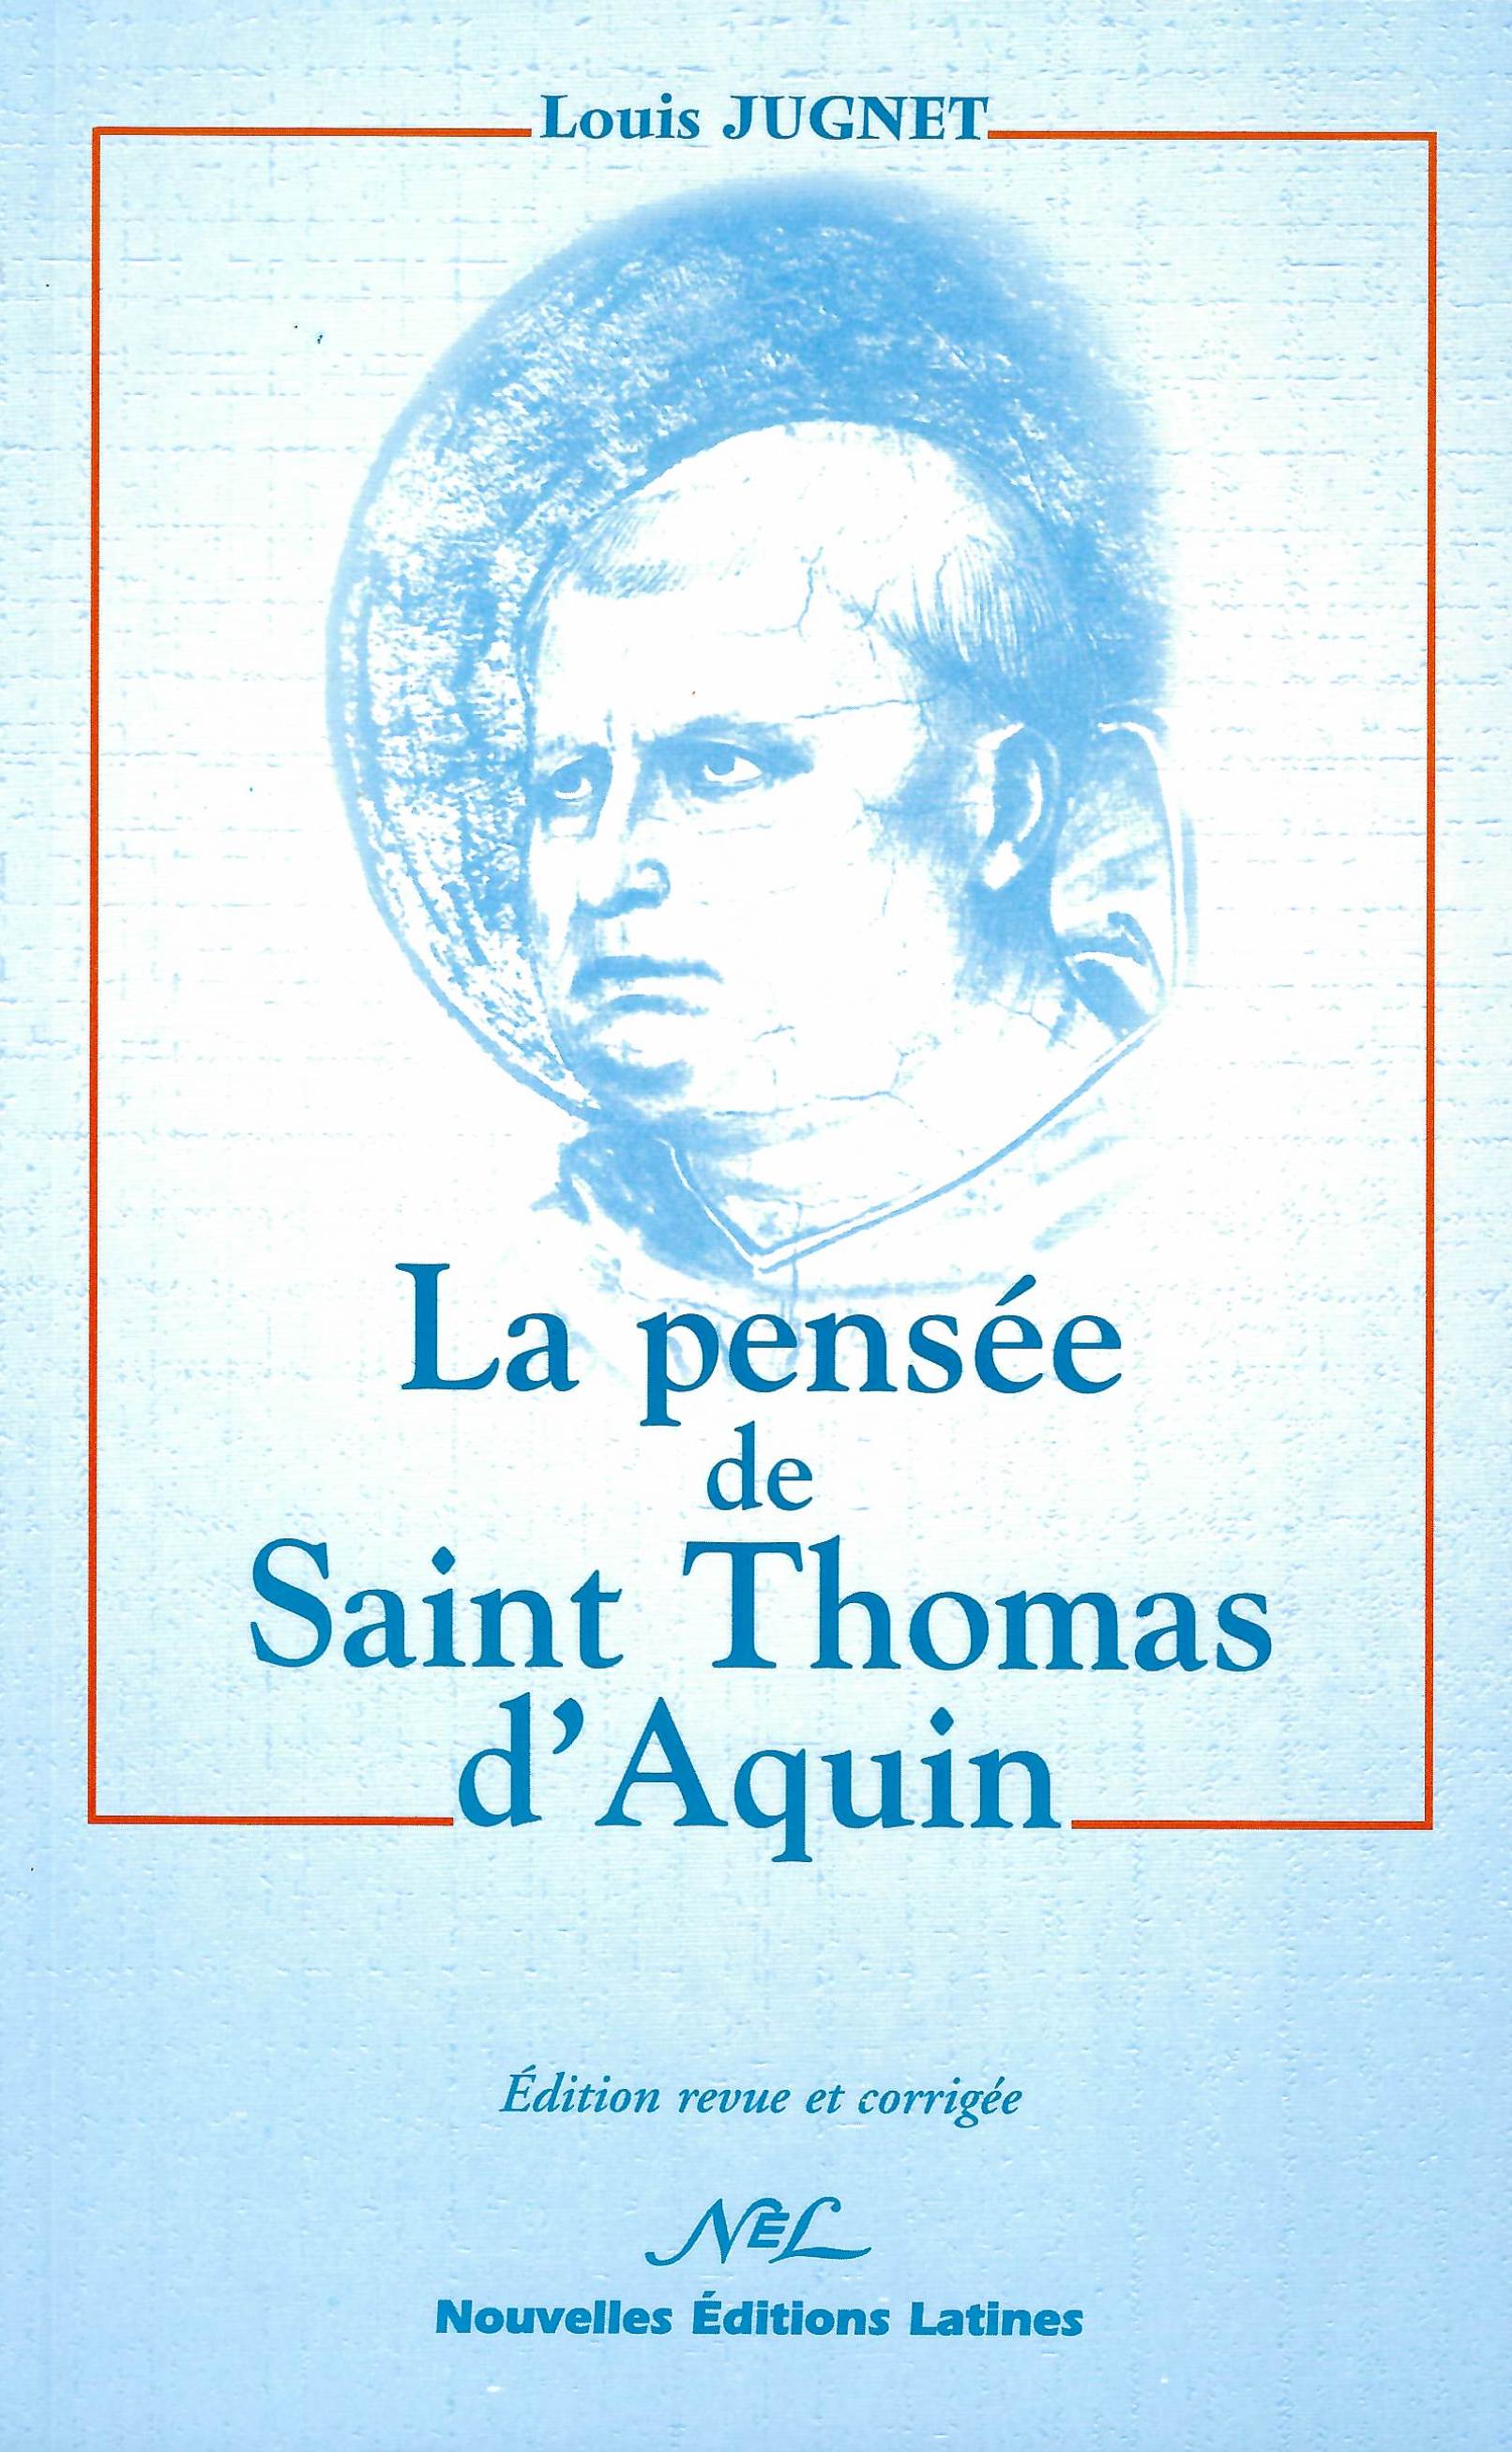 La pensée de Saint Thomas d'Aquin